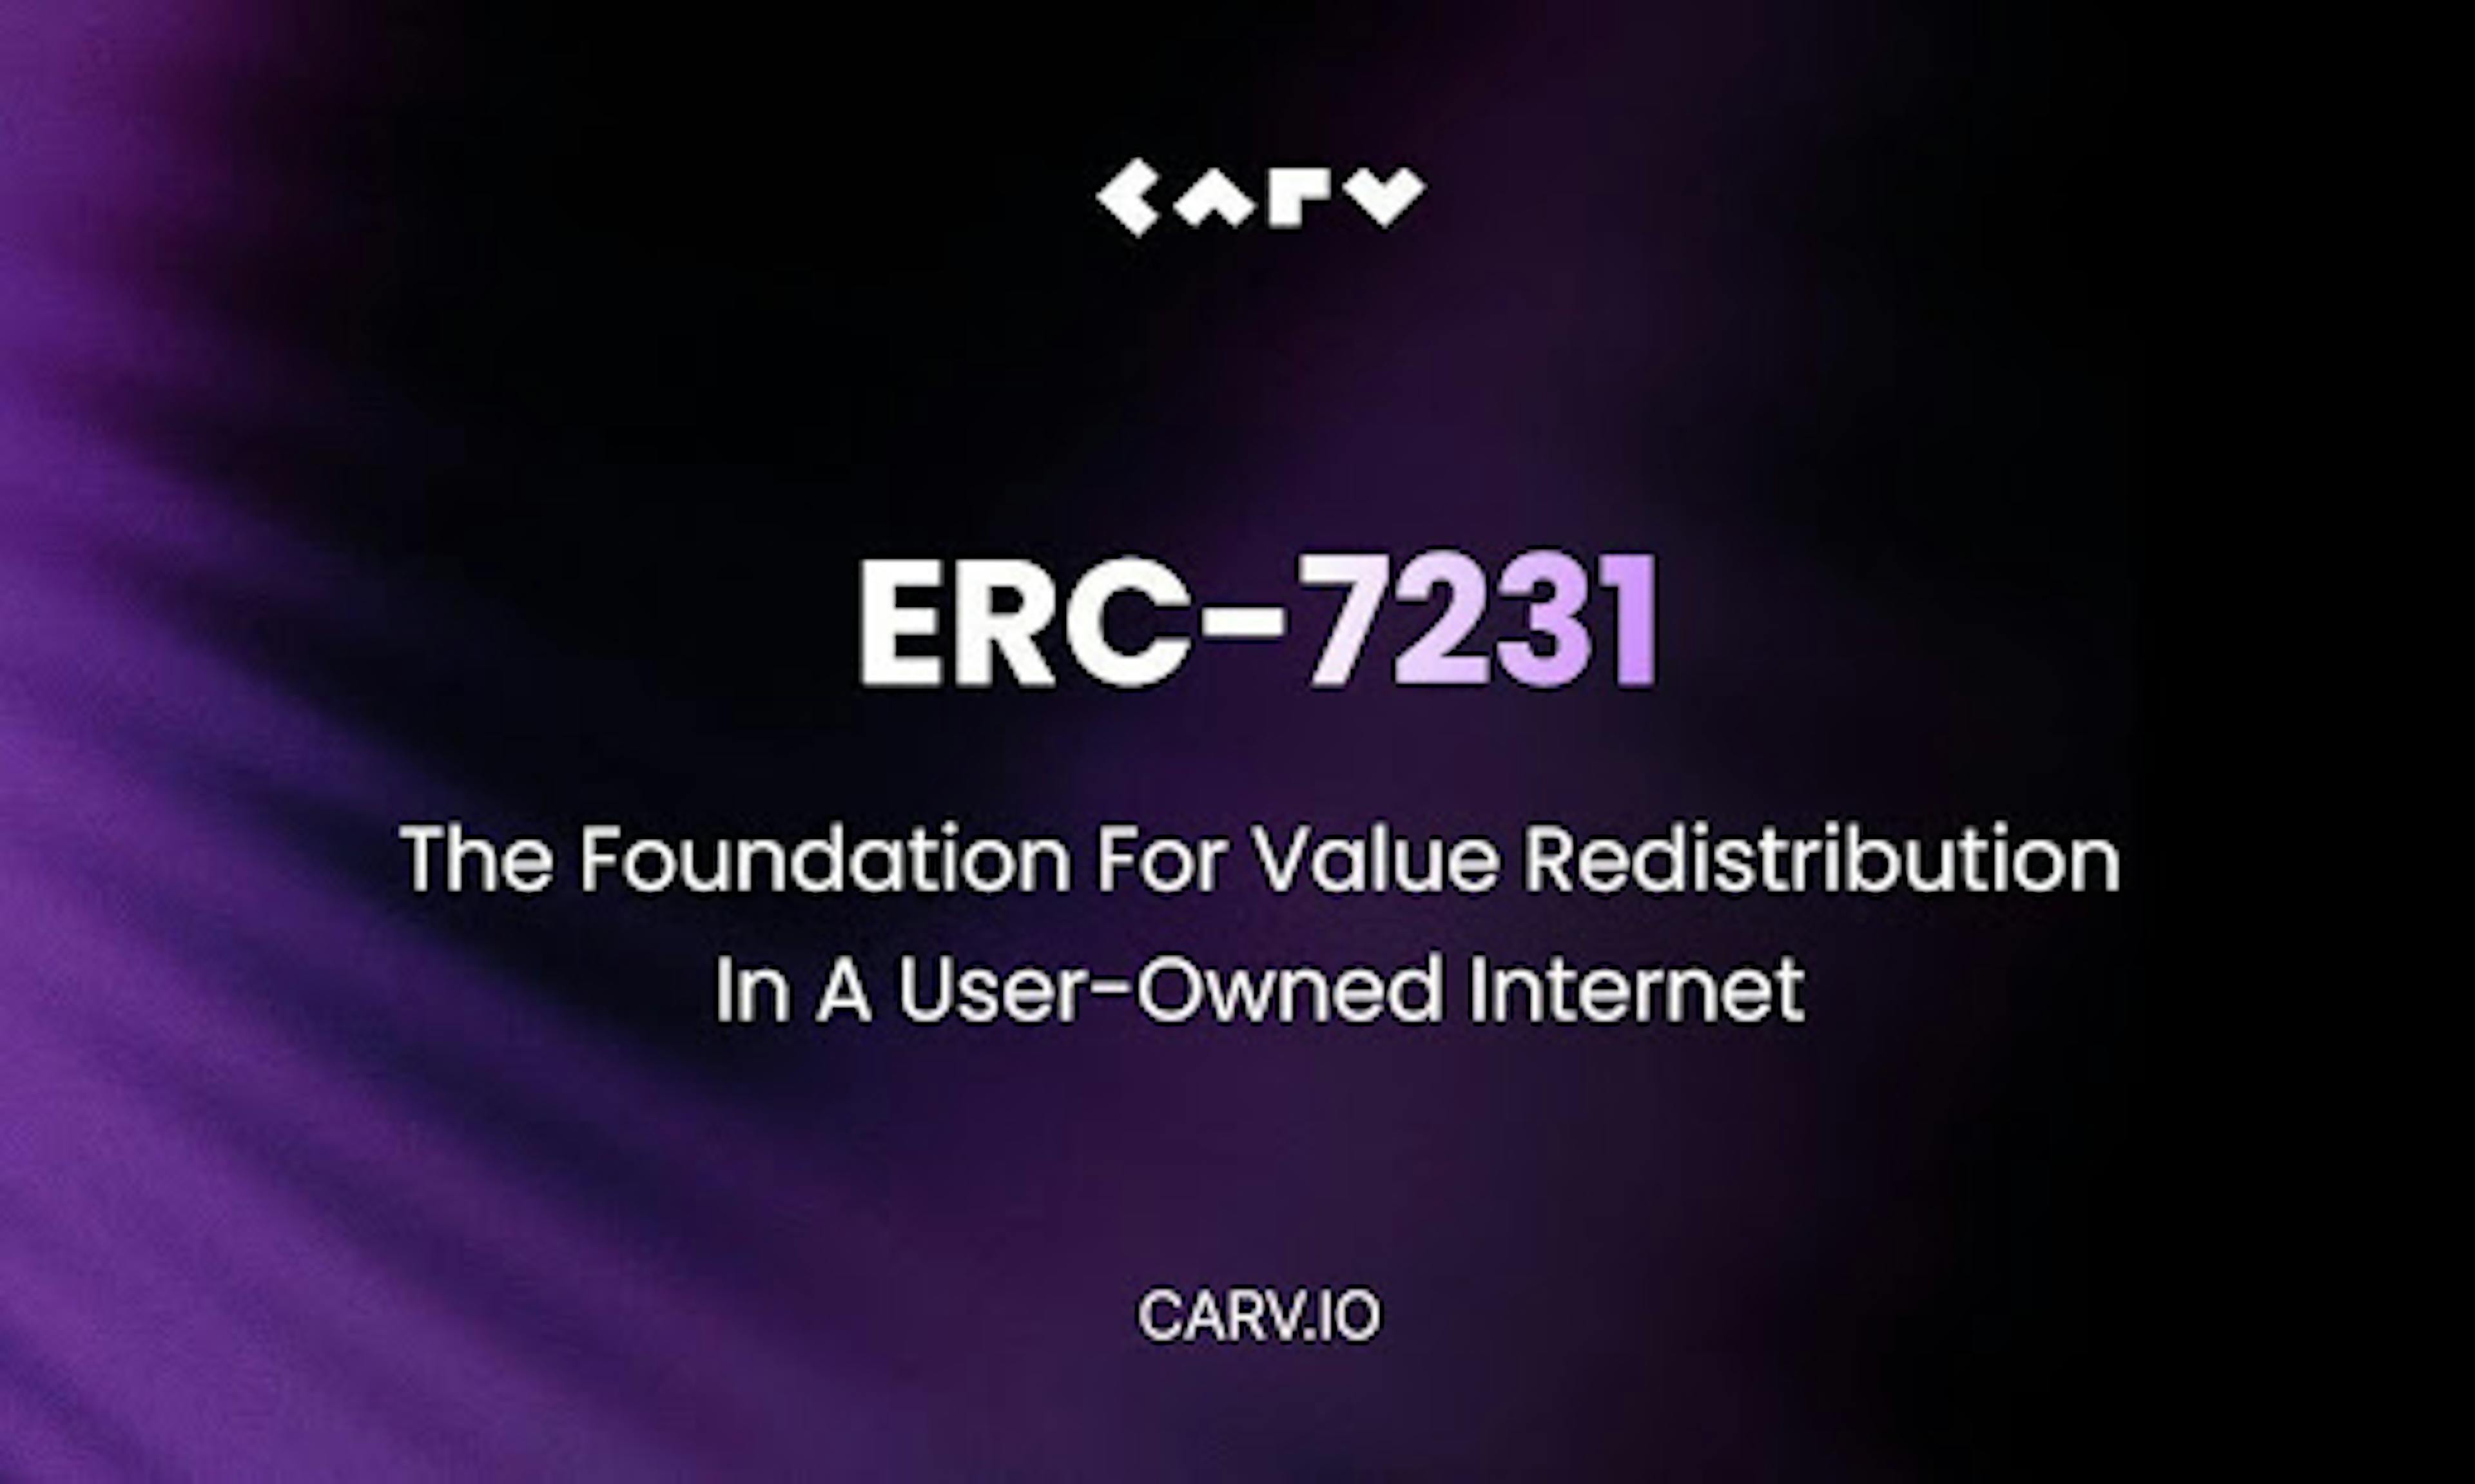 /ru/Сообщество-Ethereum-поддерживает-стандарт-carvs-nft-для-перераспределения-ценностей-пользователей-в-революции-искусственного-интеллекта feature image